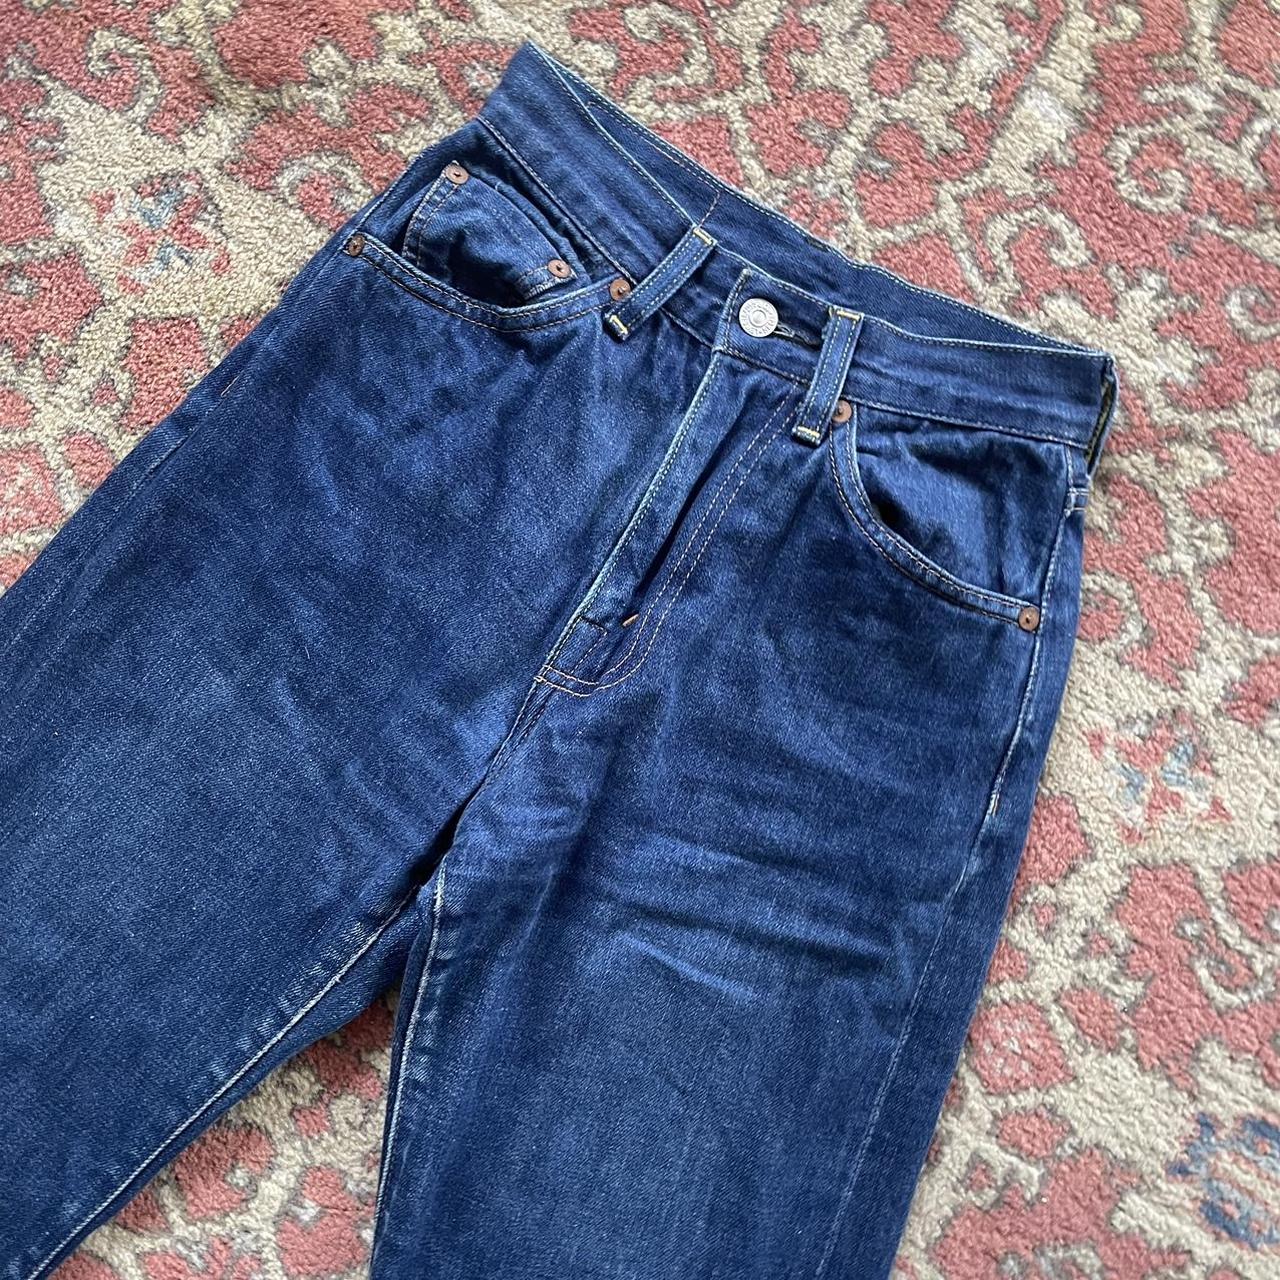 Levis repro 1950’s 701 selvedge jeans Fits 24... - Depop